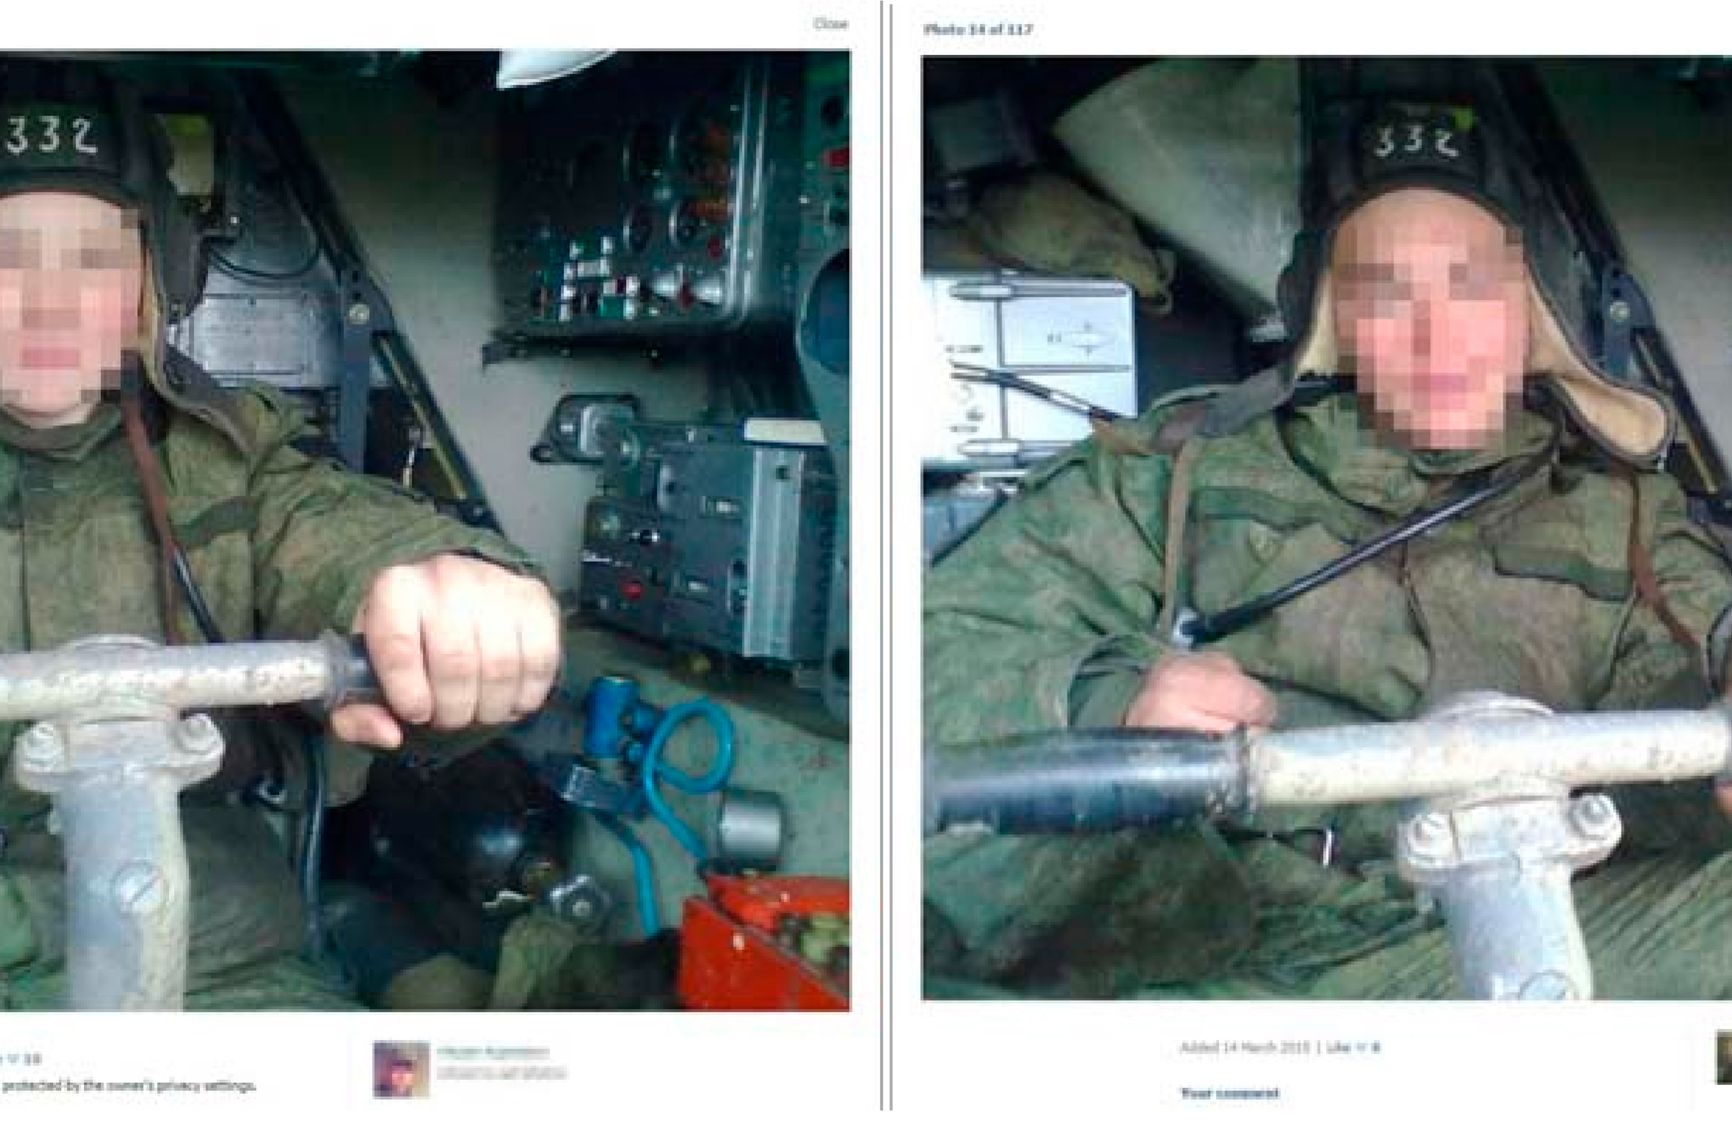 Две фотографии в аккаунтах разных солдат, сидящих на водительском месте самоходной огневой установки «Бук» в шлемофоне с номером «332»: обе фотографии загружены 14 марта 2015 г.